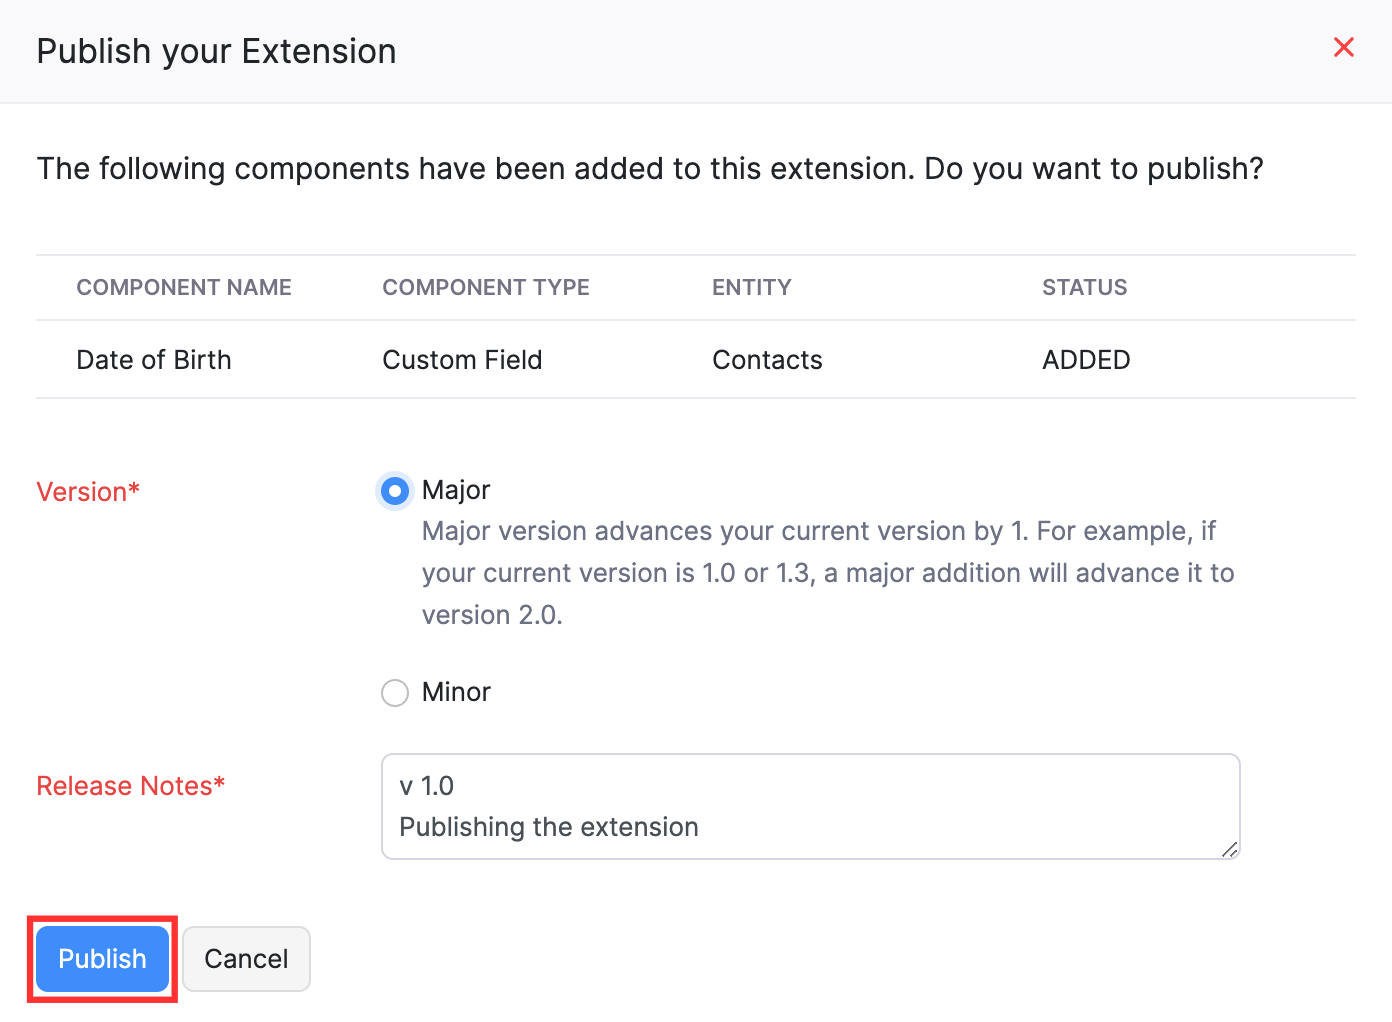 Publish Your Extension pop up